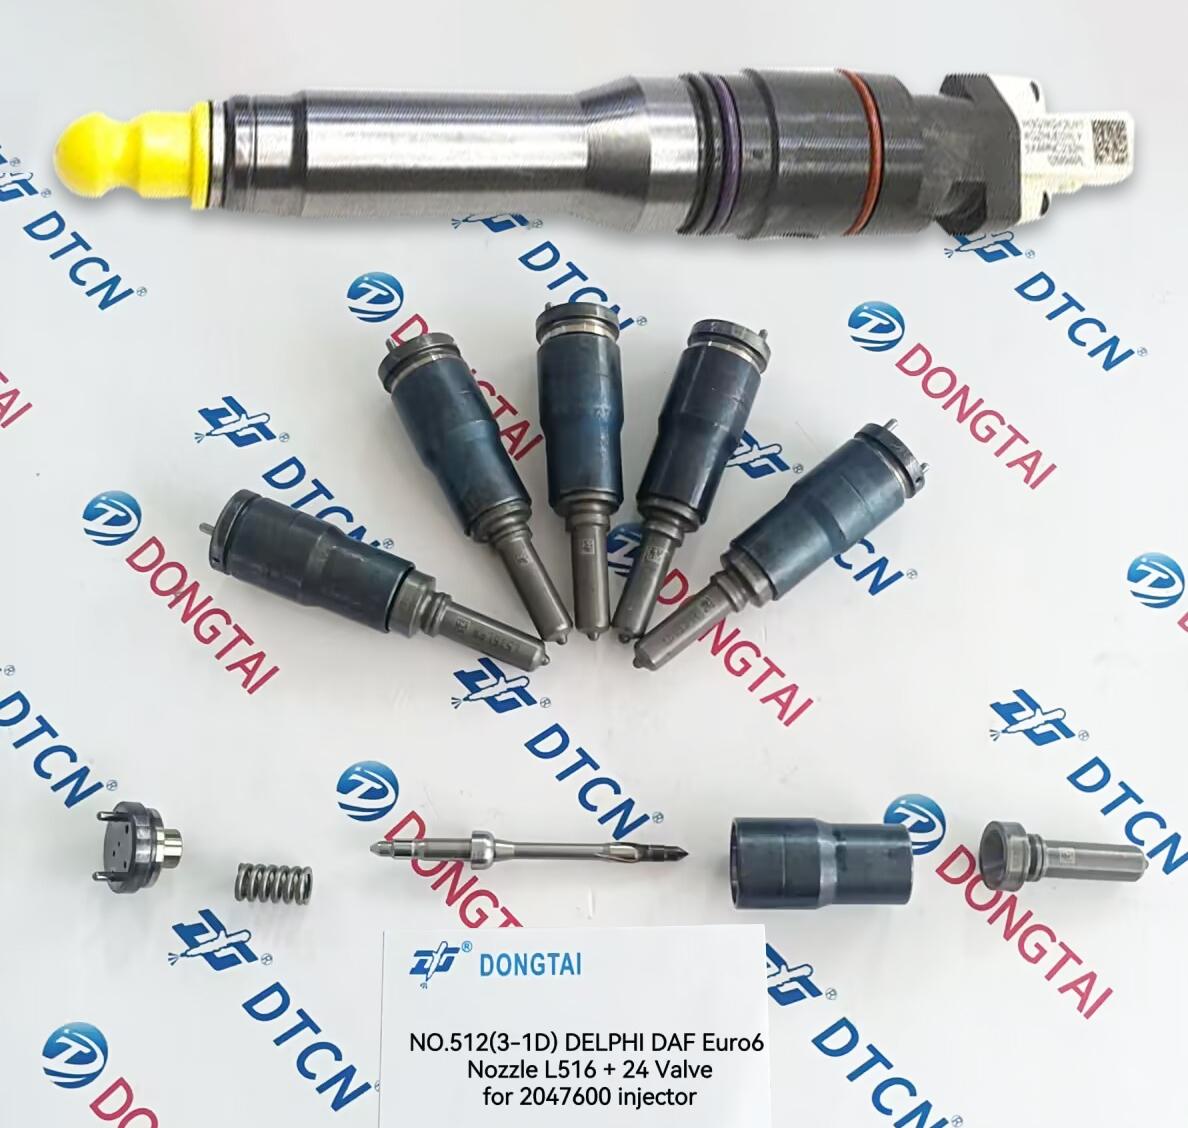 NO.512(3-1D) DELPHI DAF Euro6 Nozzle L516+24 Valve for 2047600 Injector